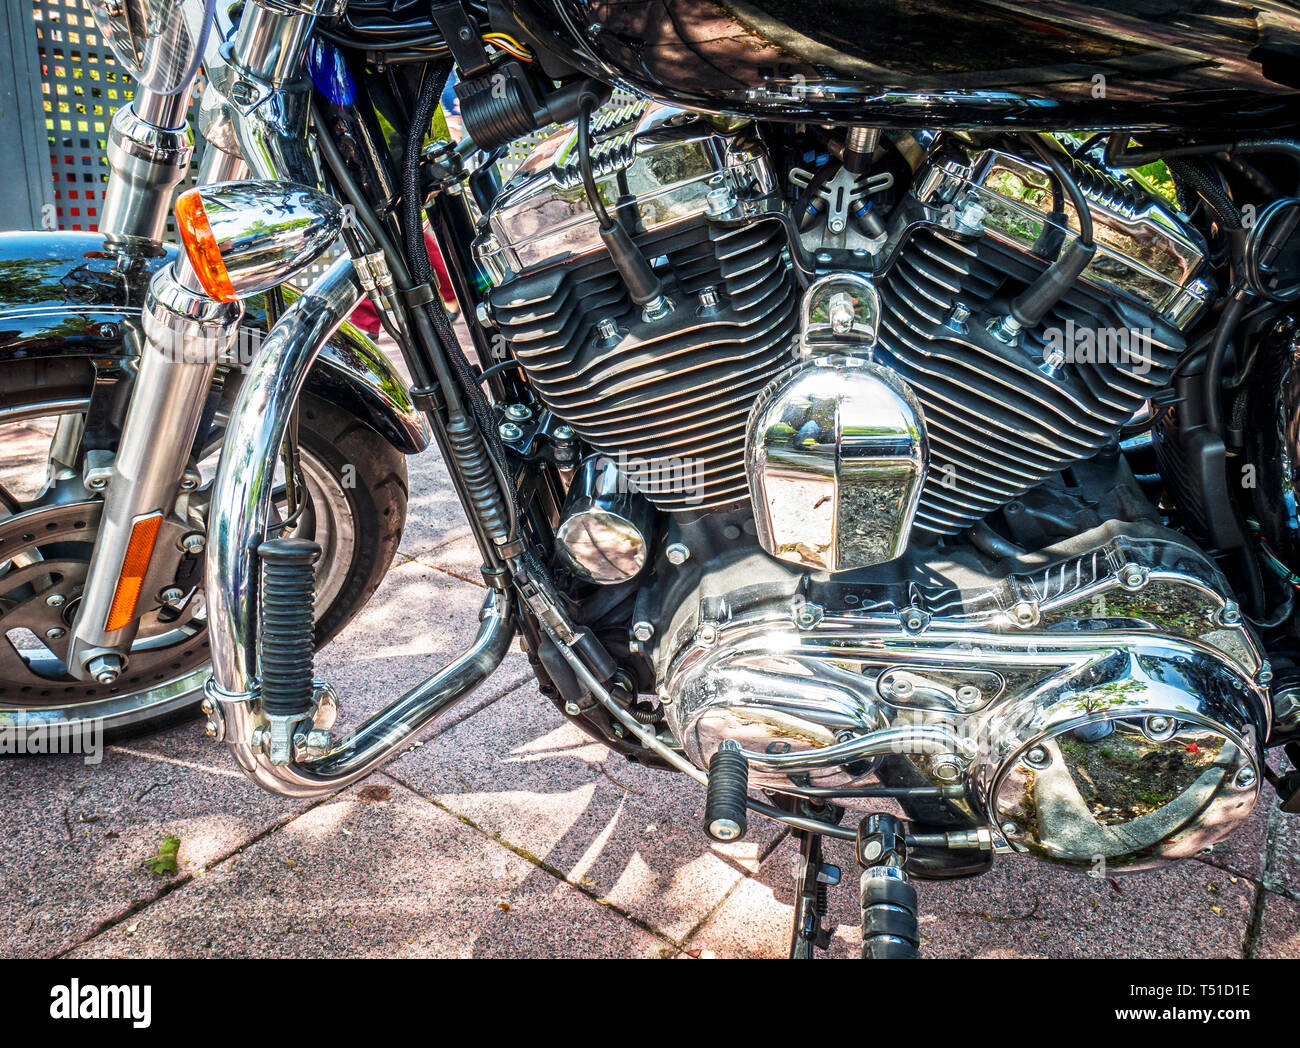 Motor de dos cilindros de una motocicleta. Madrid. España. Stock Photo